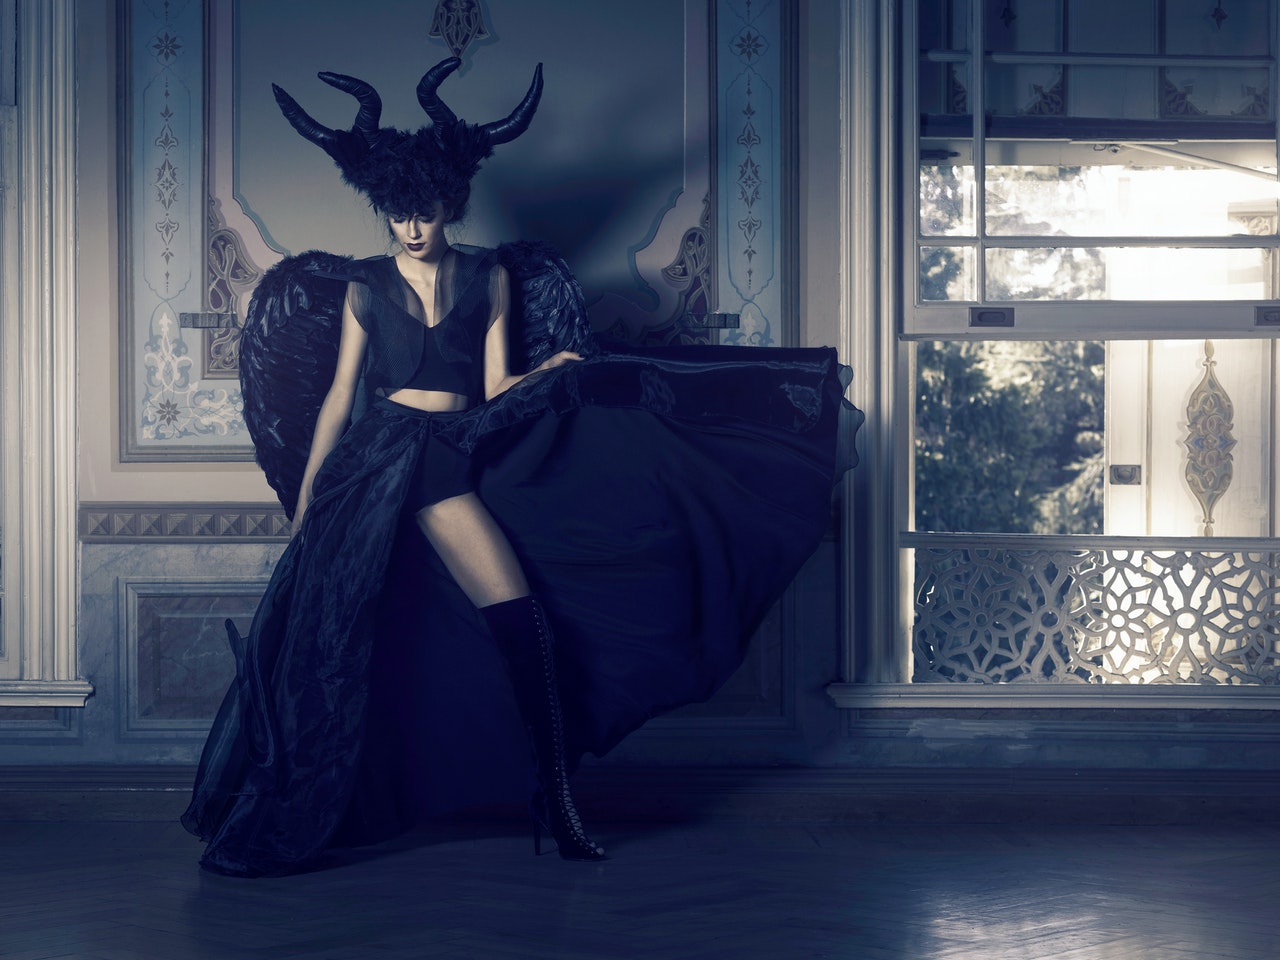 Woman In Black Dress With Angel Wings Standing Near Window